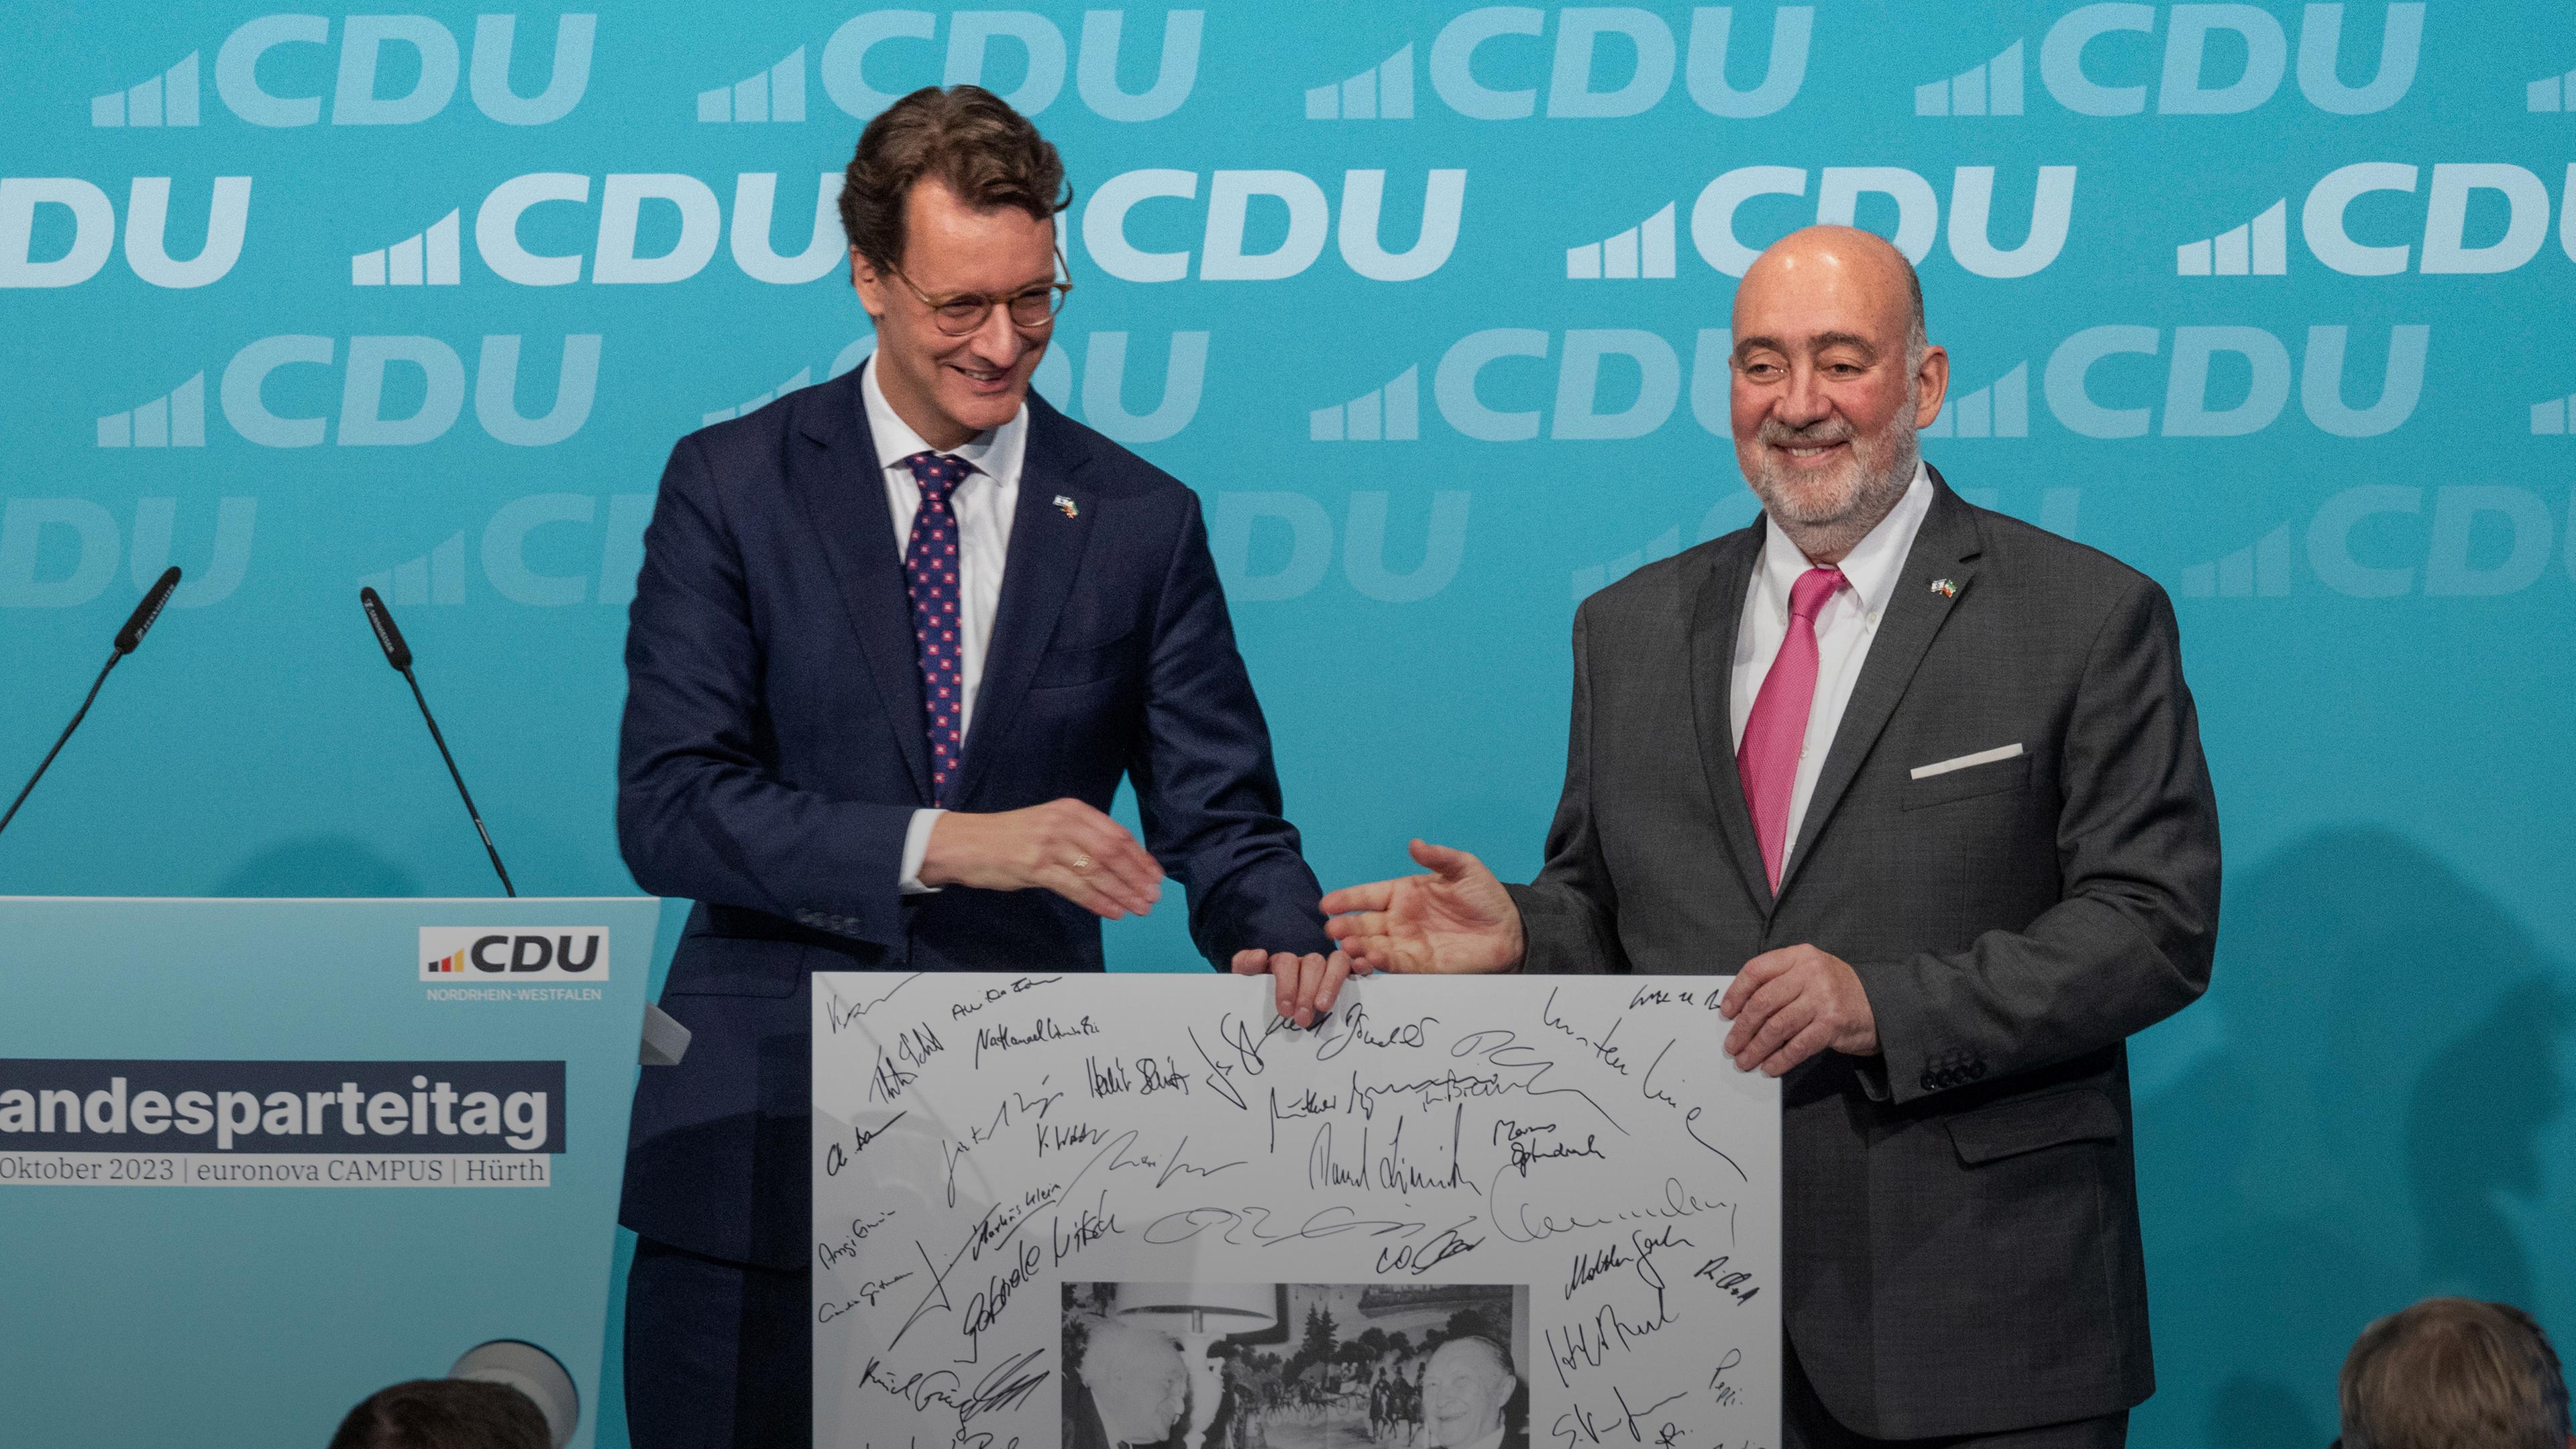 NRW-Ministerpräsident Hendrik Wüst (l.) überreicht dem israelischen Botschafter Ron Prosor beim CDU-Landesparteitag in Hürth eine Erinnerung zur Solidarität mit Israel.